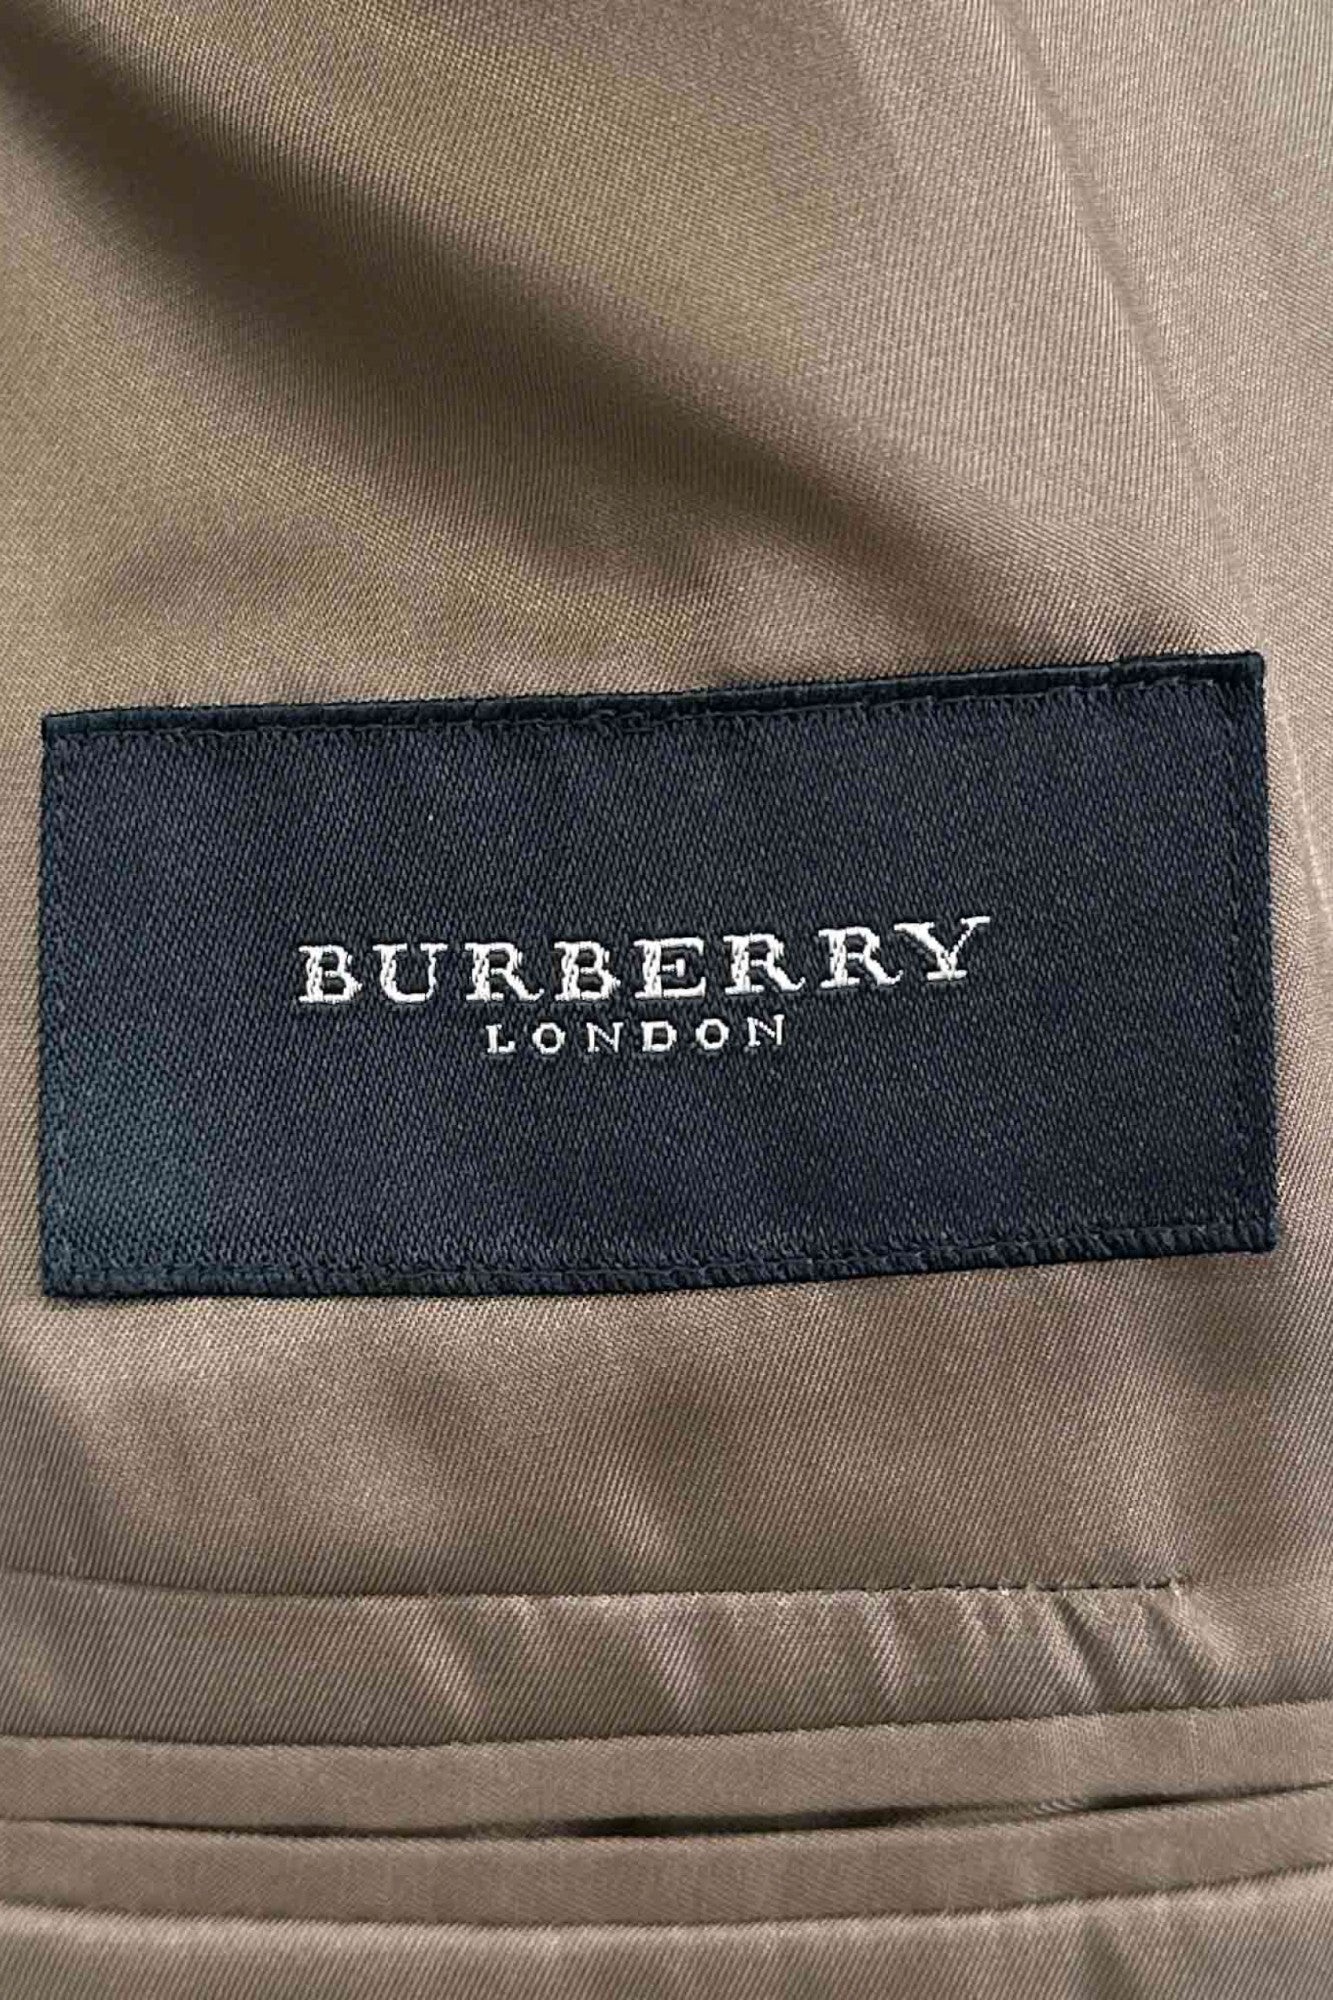 BURBERRY LONDON jacket